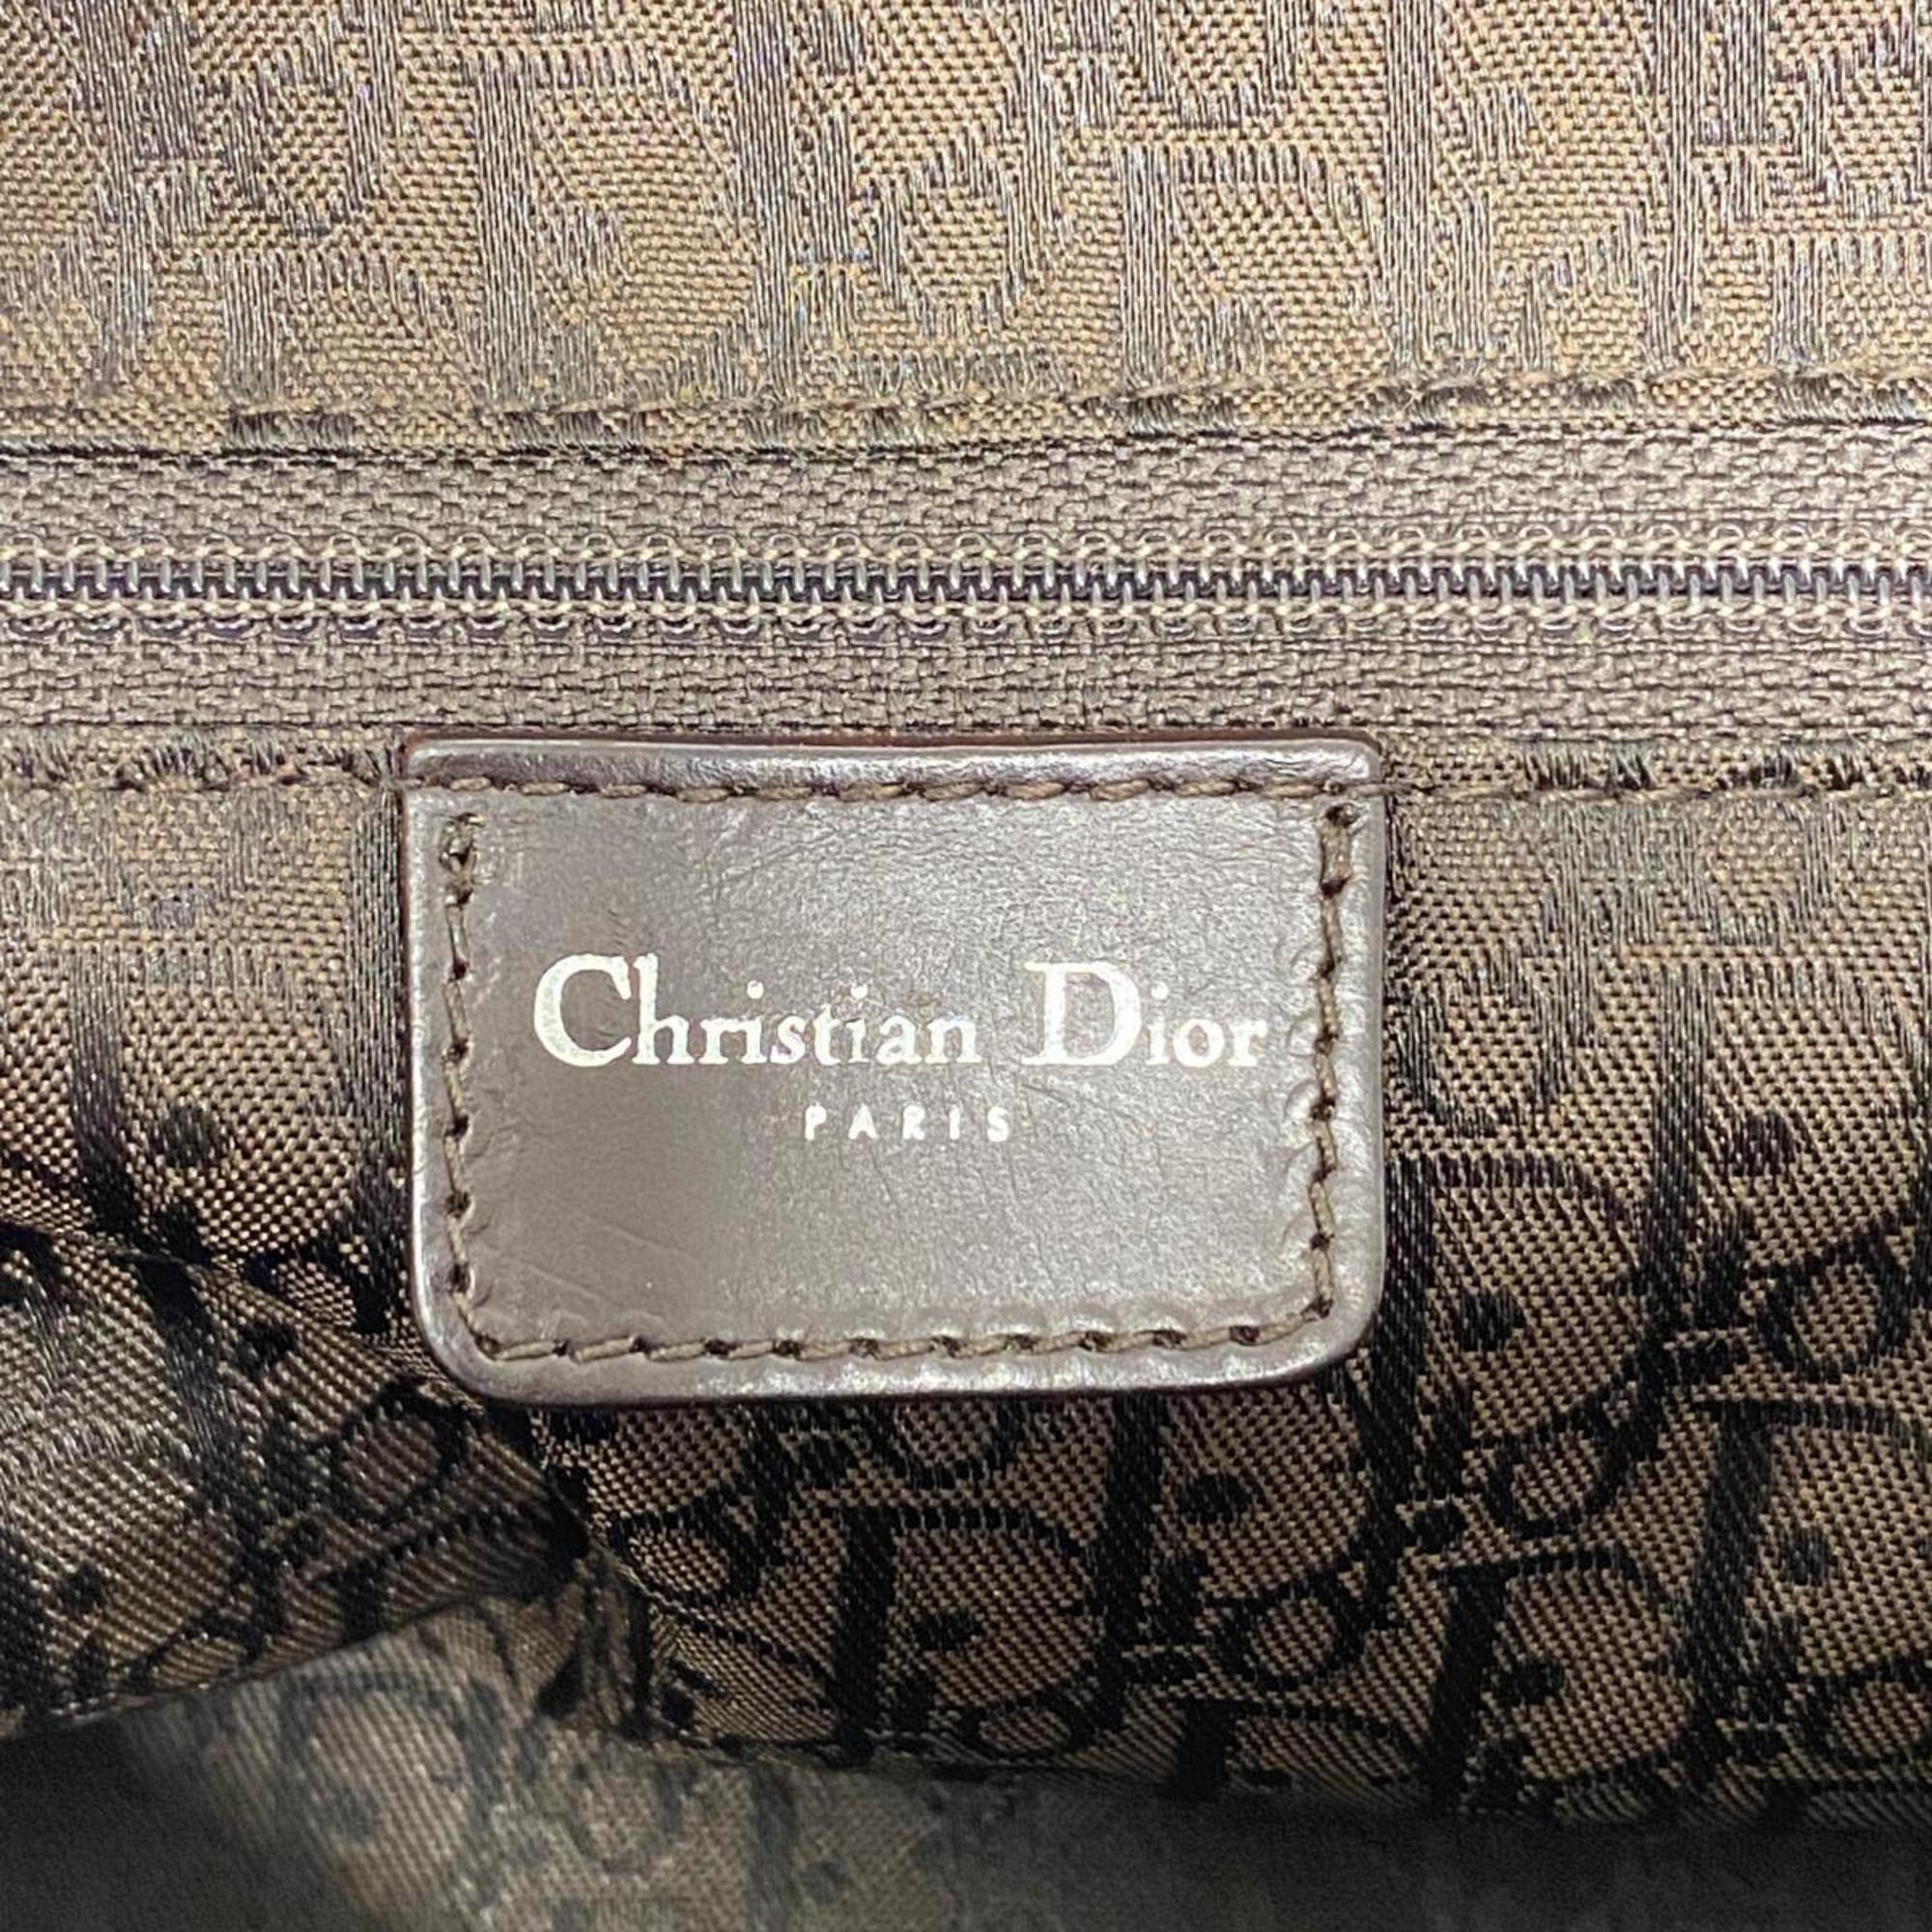 クリスチャン・ディオール(Christian Dior) クリスチャンディオール ハンドバッグ カナージュ レザー キャメル   レディース